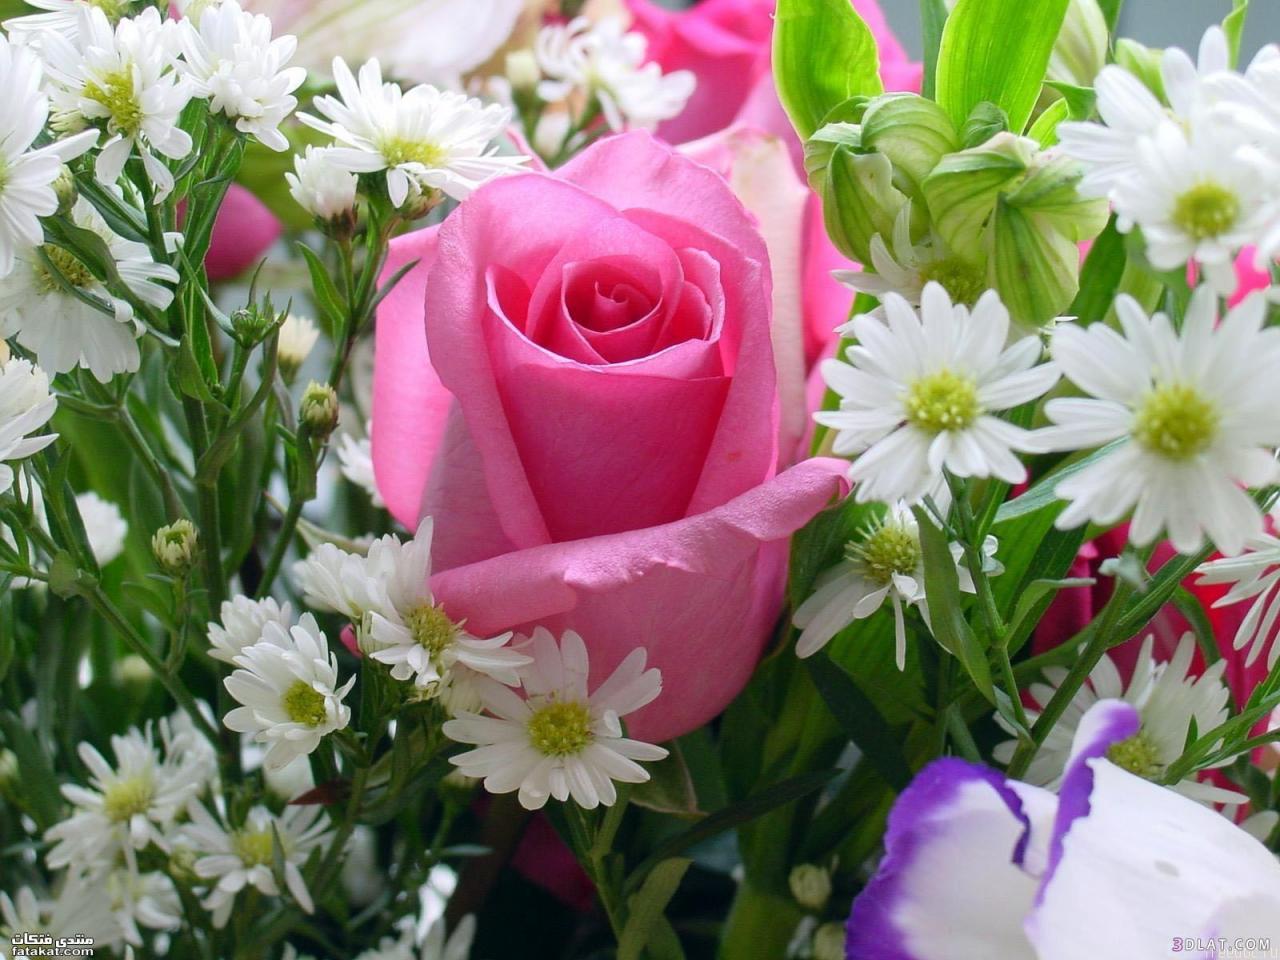 اجمل وردة في العالم اشكال مميزة وجميلة من الورد كيوت